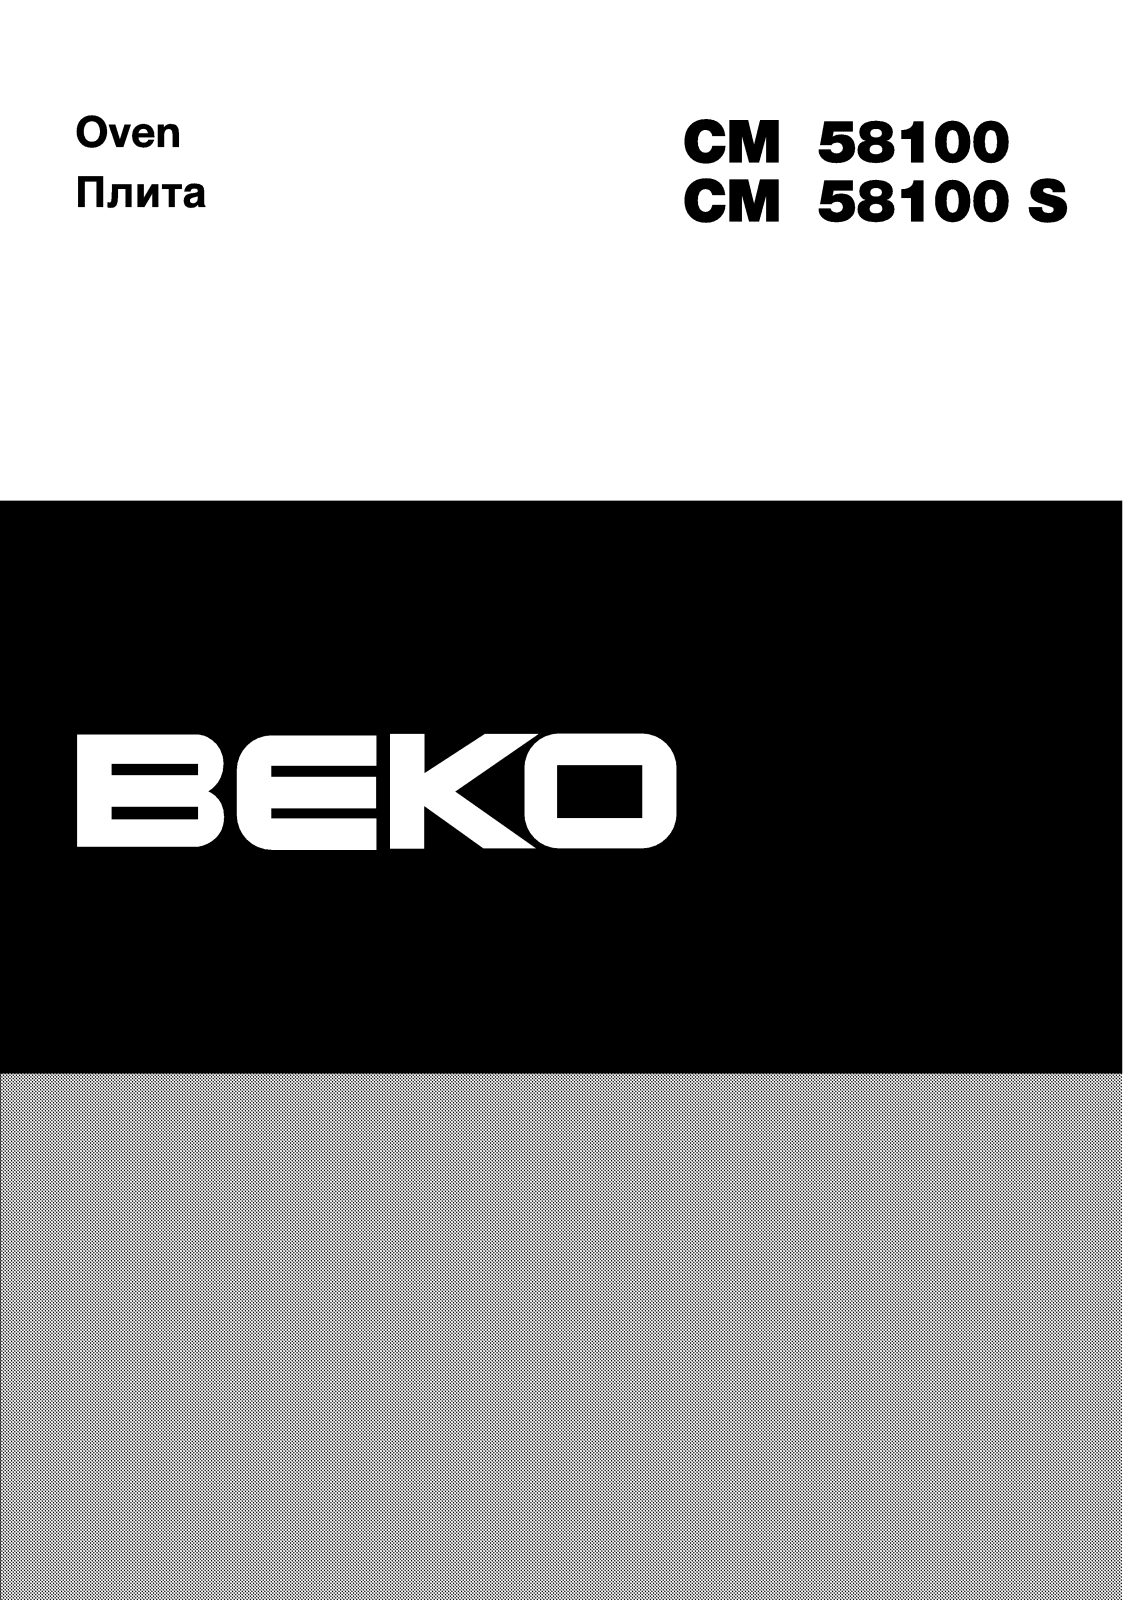 Beko CM 58100, CM 58100 S User Manual